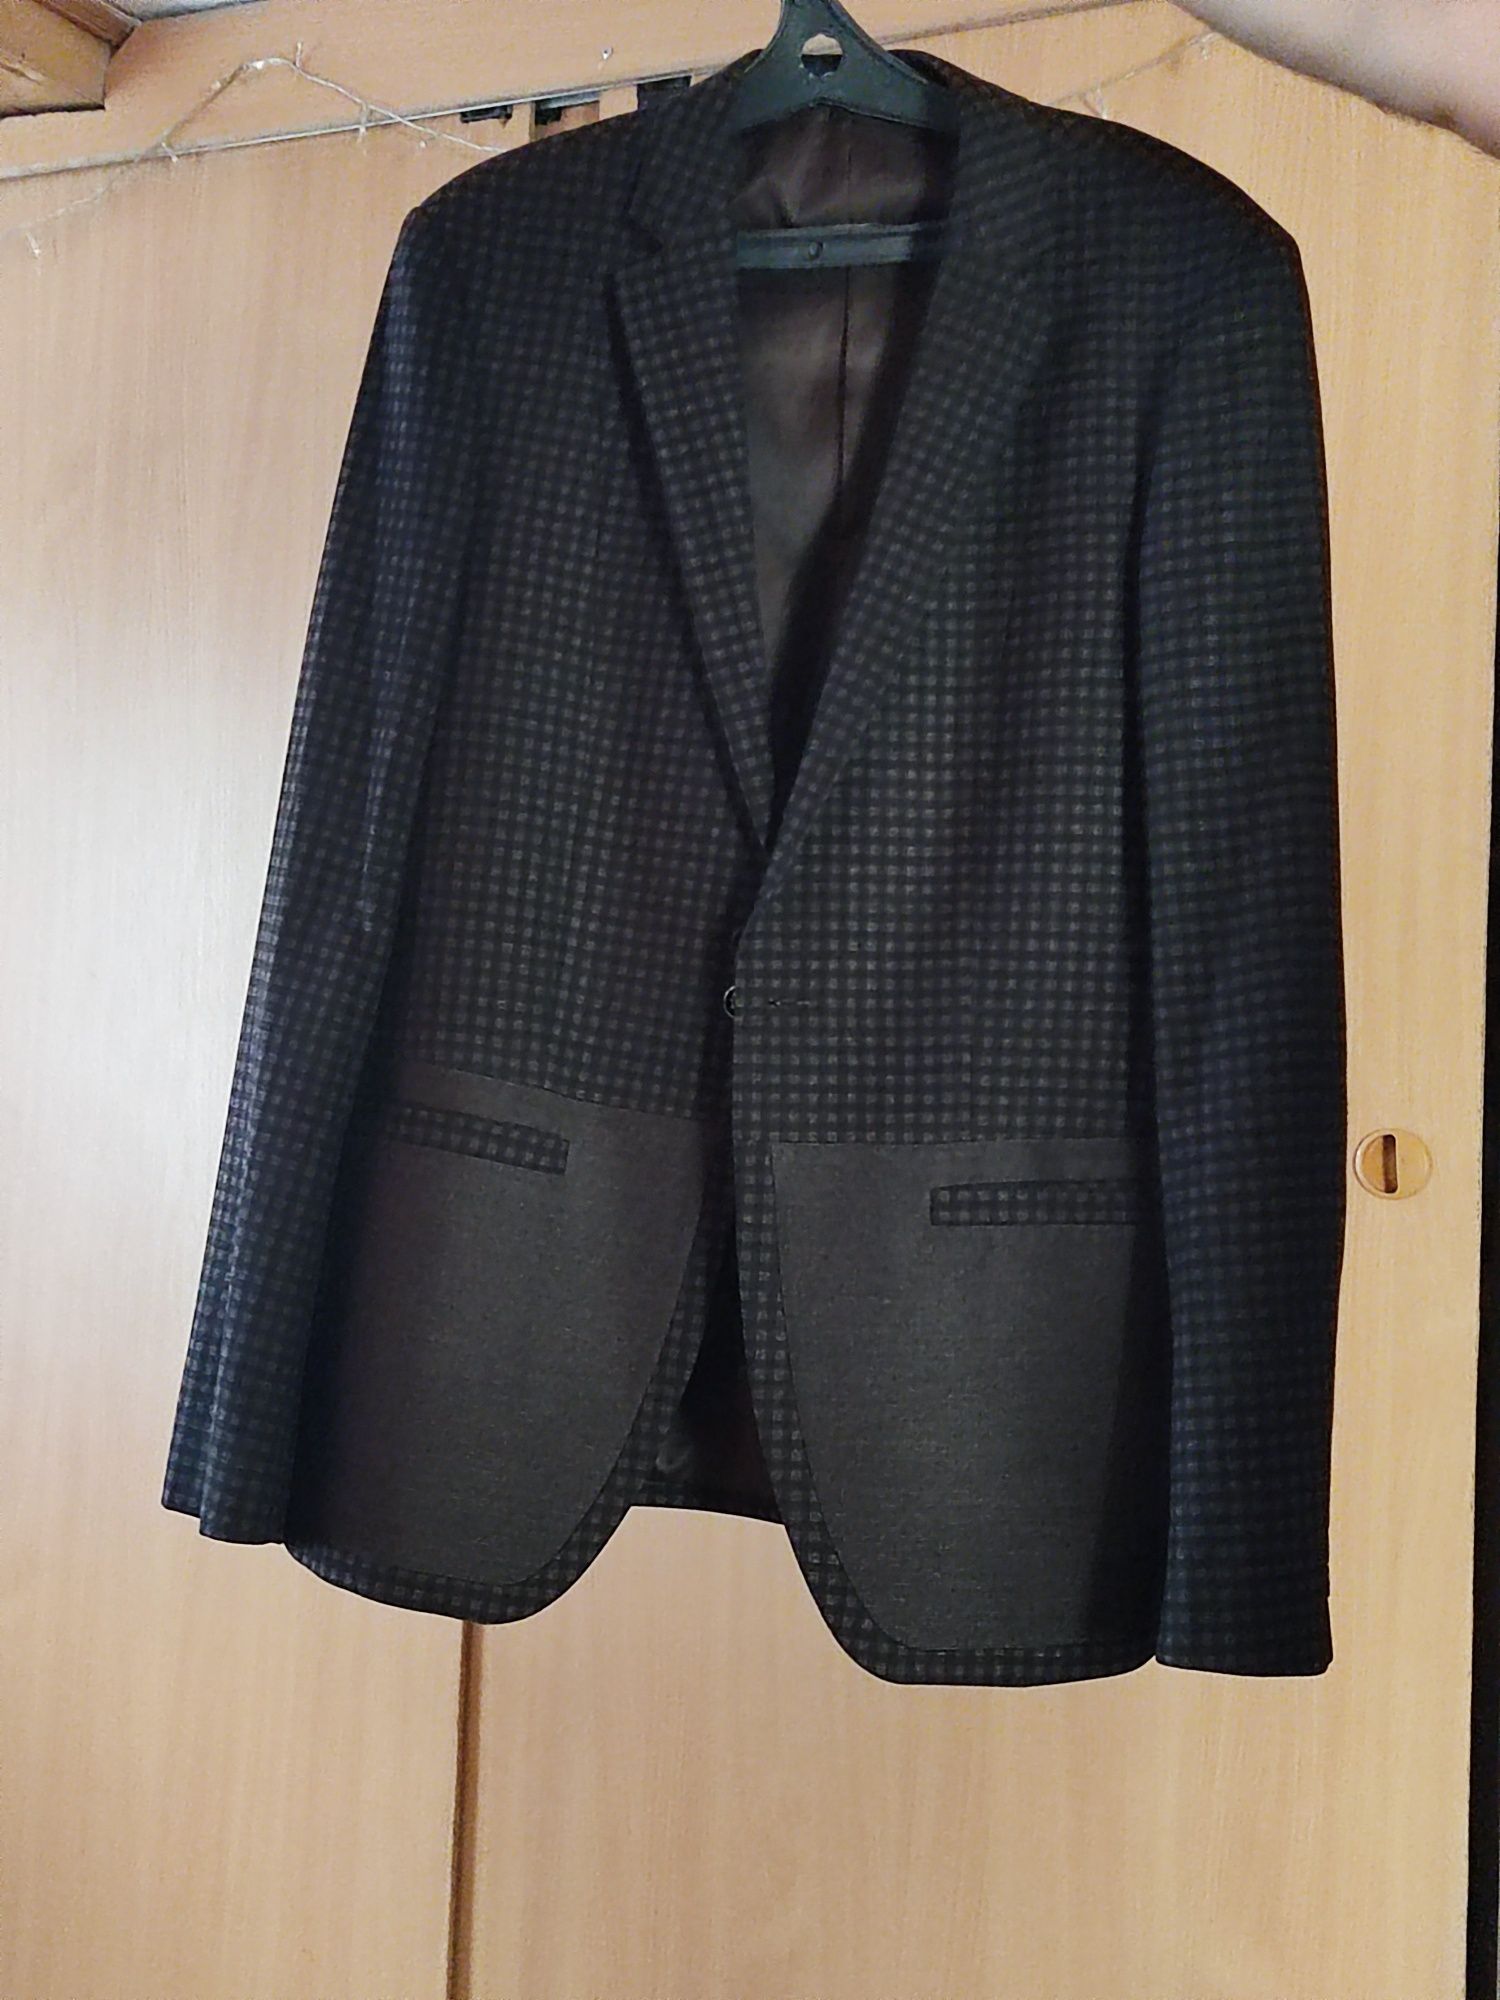 Продам мужской пиджак фирмы Allero